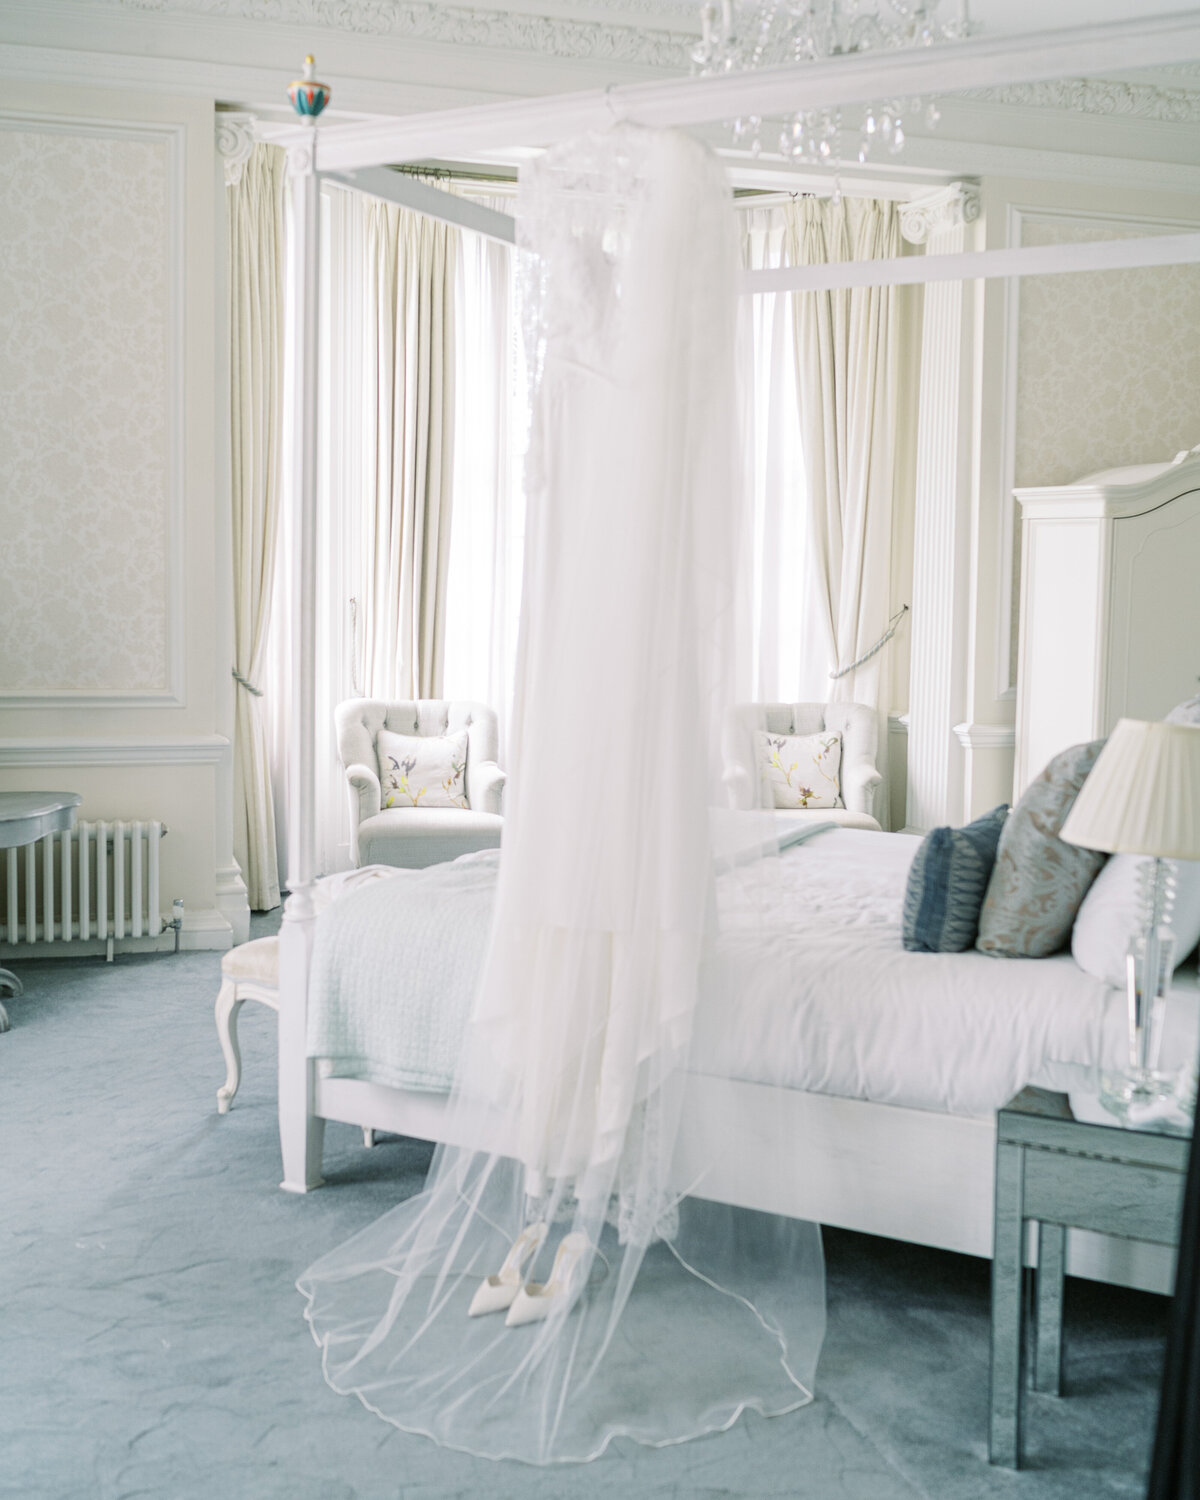 Wedding dress in bridal suite at Hedsor House wedding venue